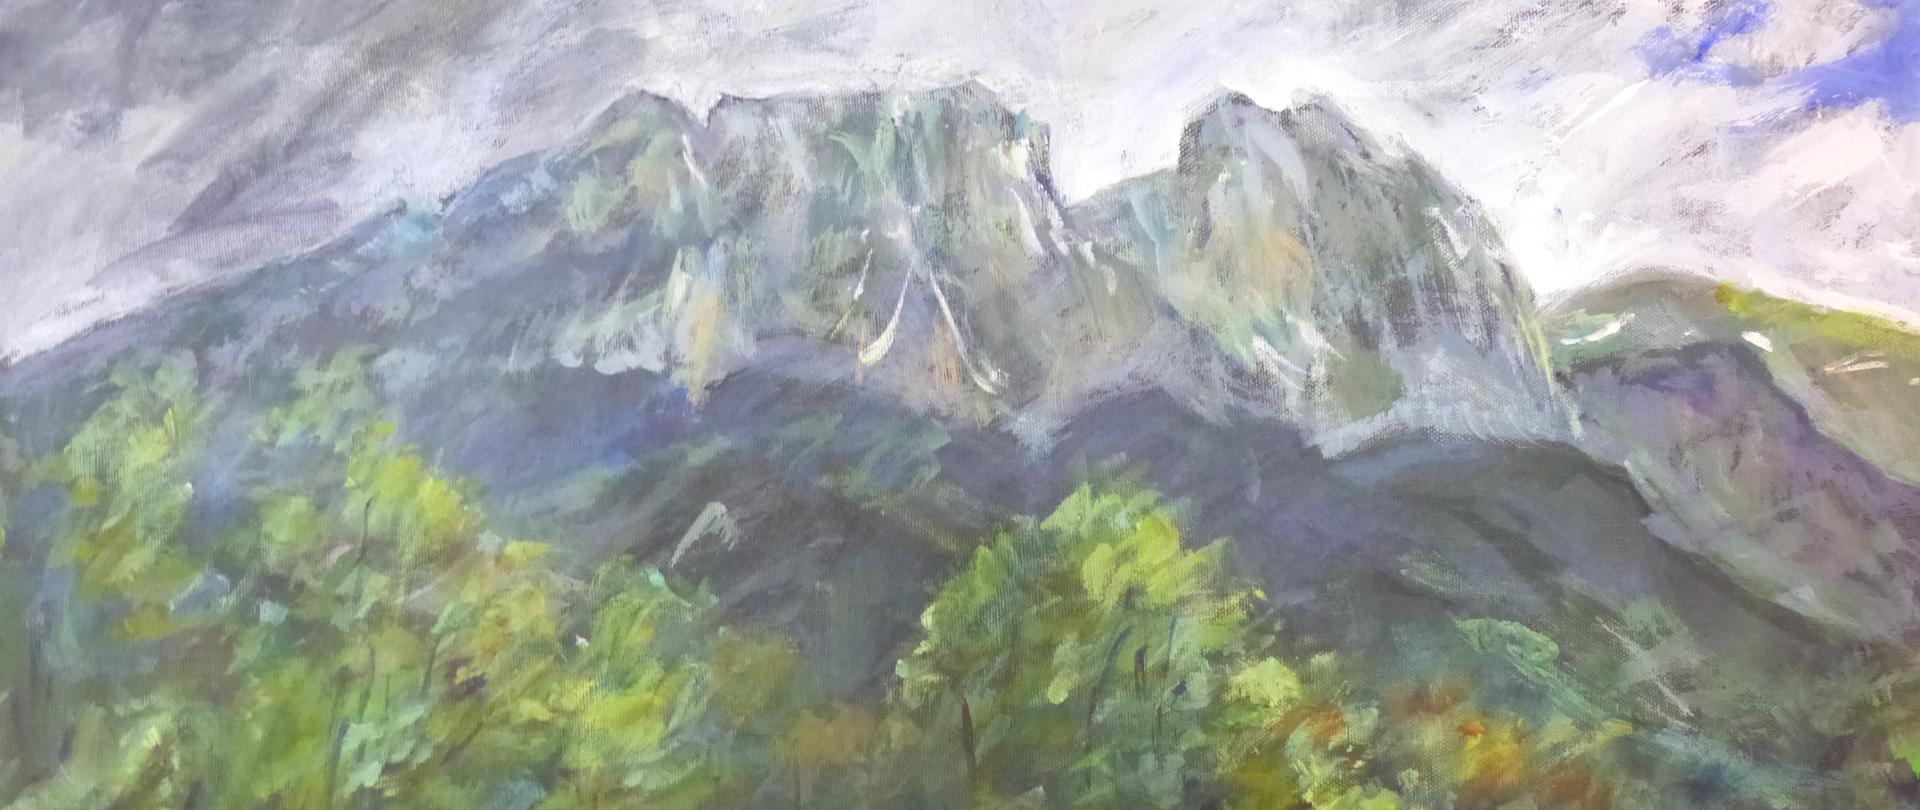 Na zdjęciu przedstawiony jest obraz olejny namalowany przez słowackiego artystę malarza Stano Laydę. Na pierwszym planie obrazu zielona łąka, następnie namalowane są drzewa i krzewy. Na drugim planie przedstawione są zbocza gór z zieloną kosówką. Na trzecim planie namalowany jest szczyt Giewontu w błękitnych chmurach.